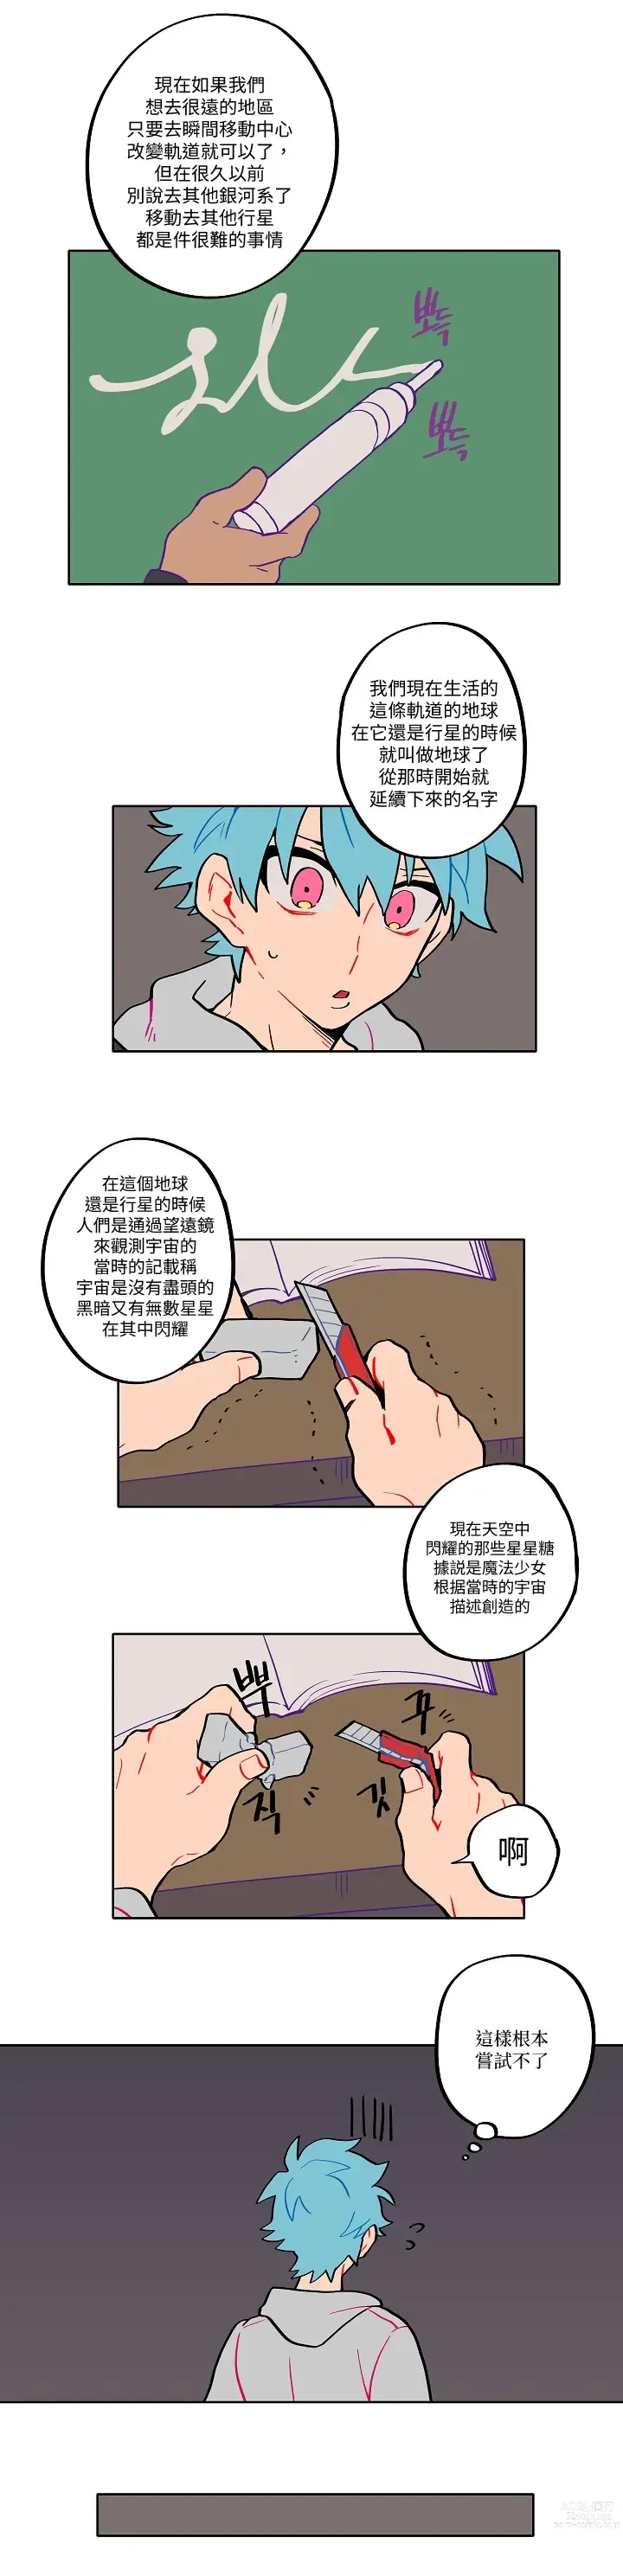 Page 21 of manga 宙与剑 02-03